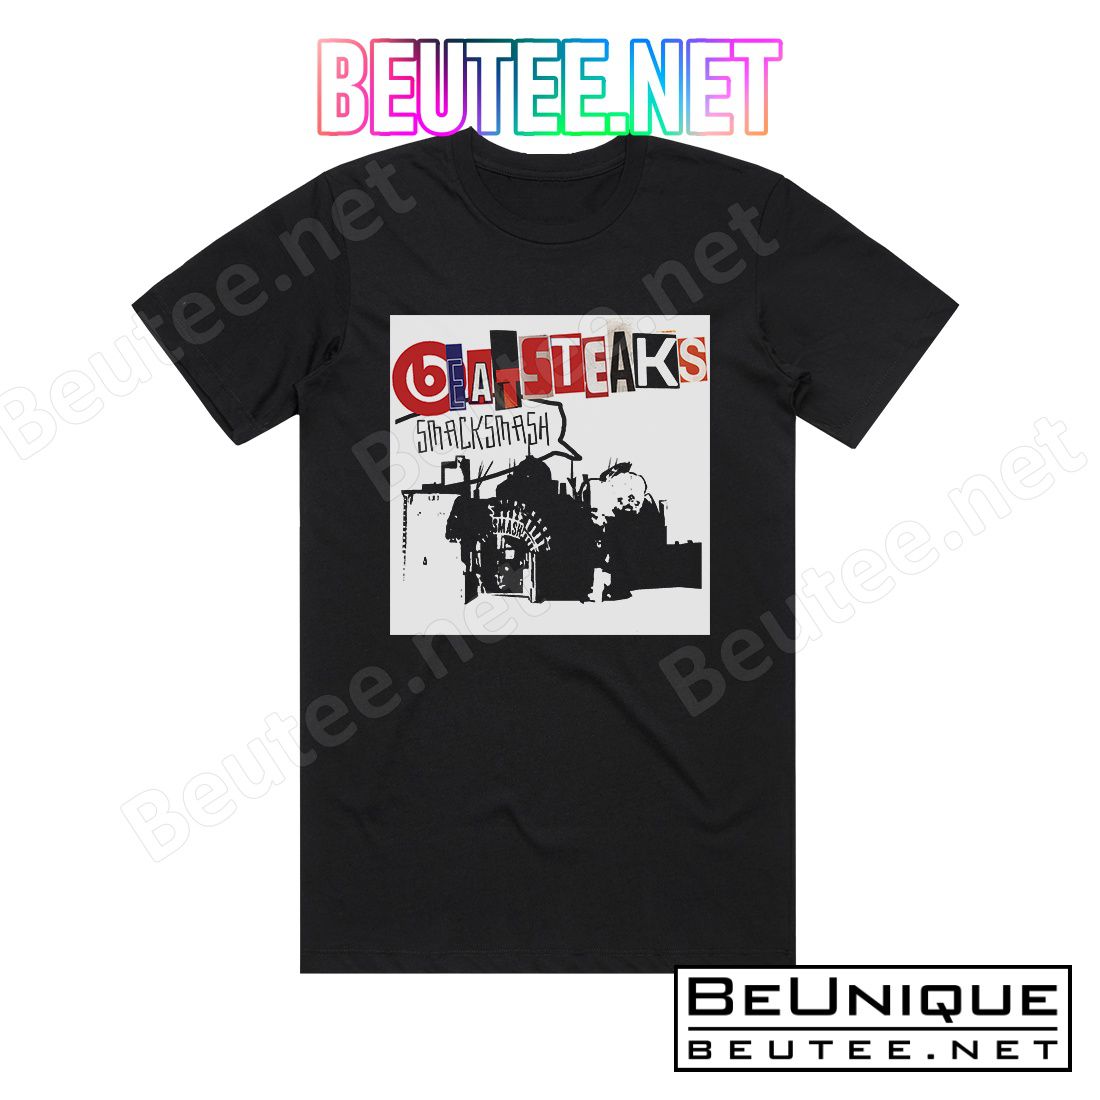 Beatsteaks Smack Smash Album Cover T-Shirt